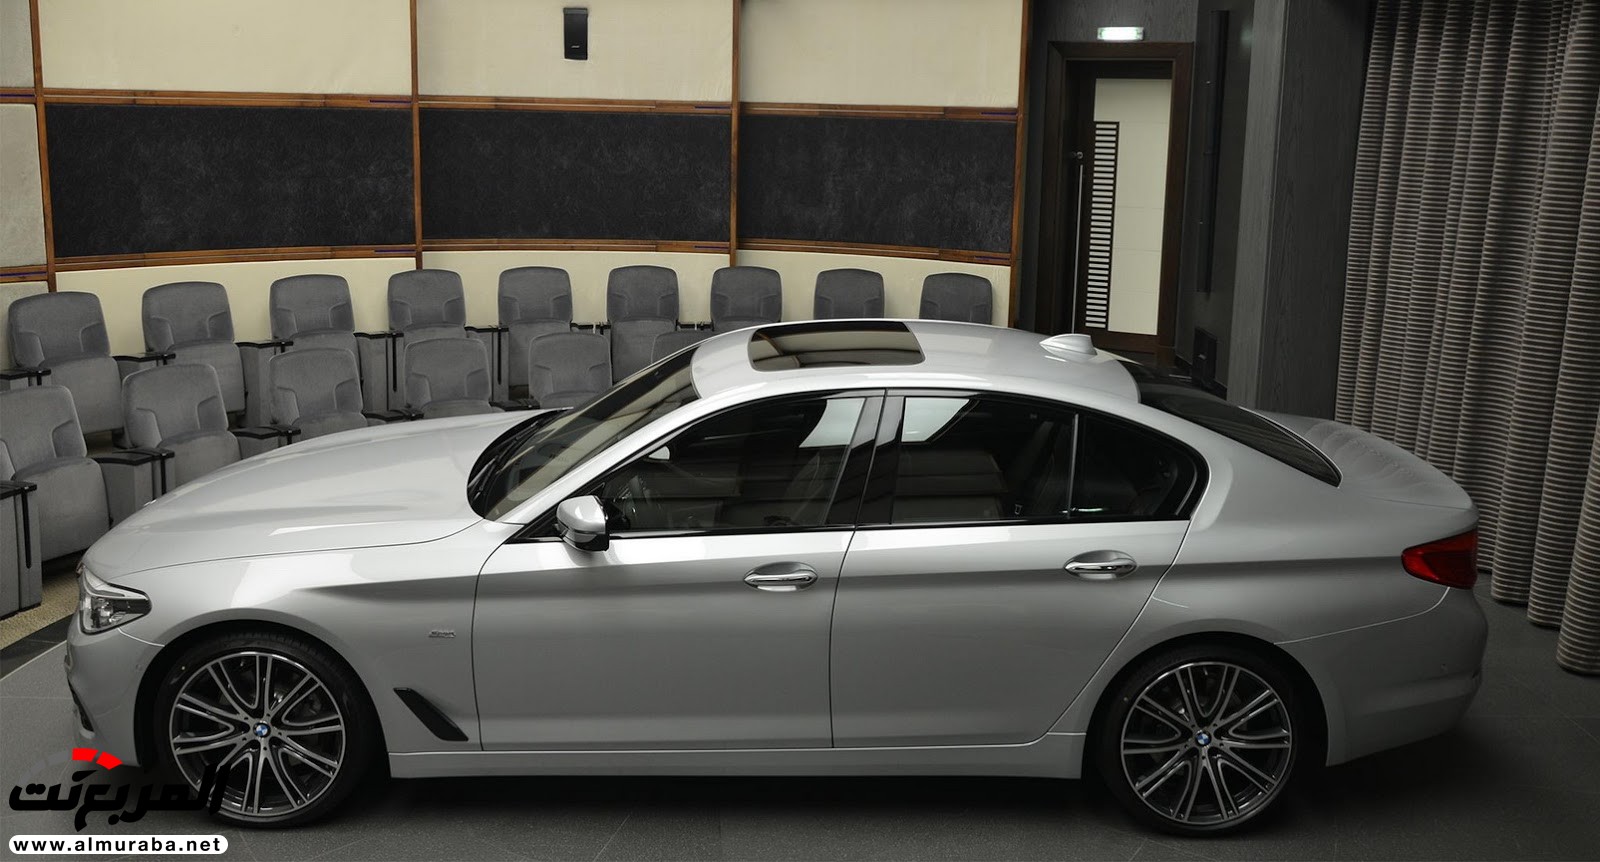 "بي إم دبليو" 540i الجديدة كلياً بتعديلات سبورت لاين معروضة بأبو ظبي BMW 19